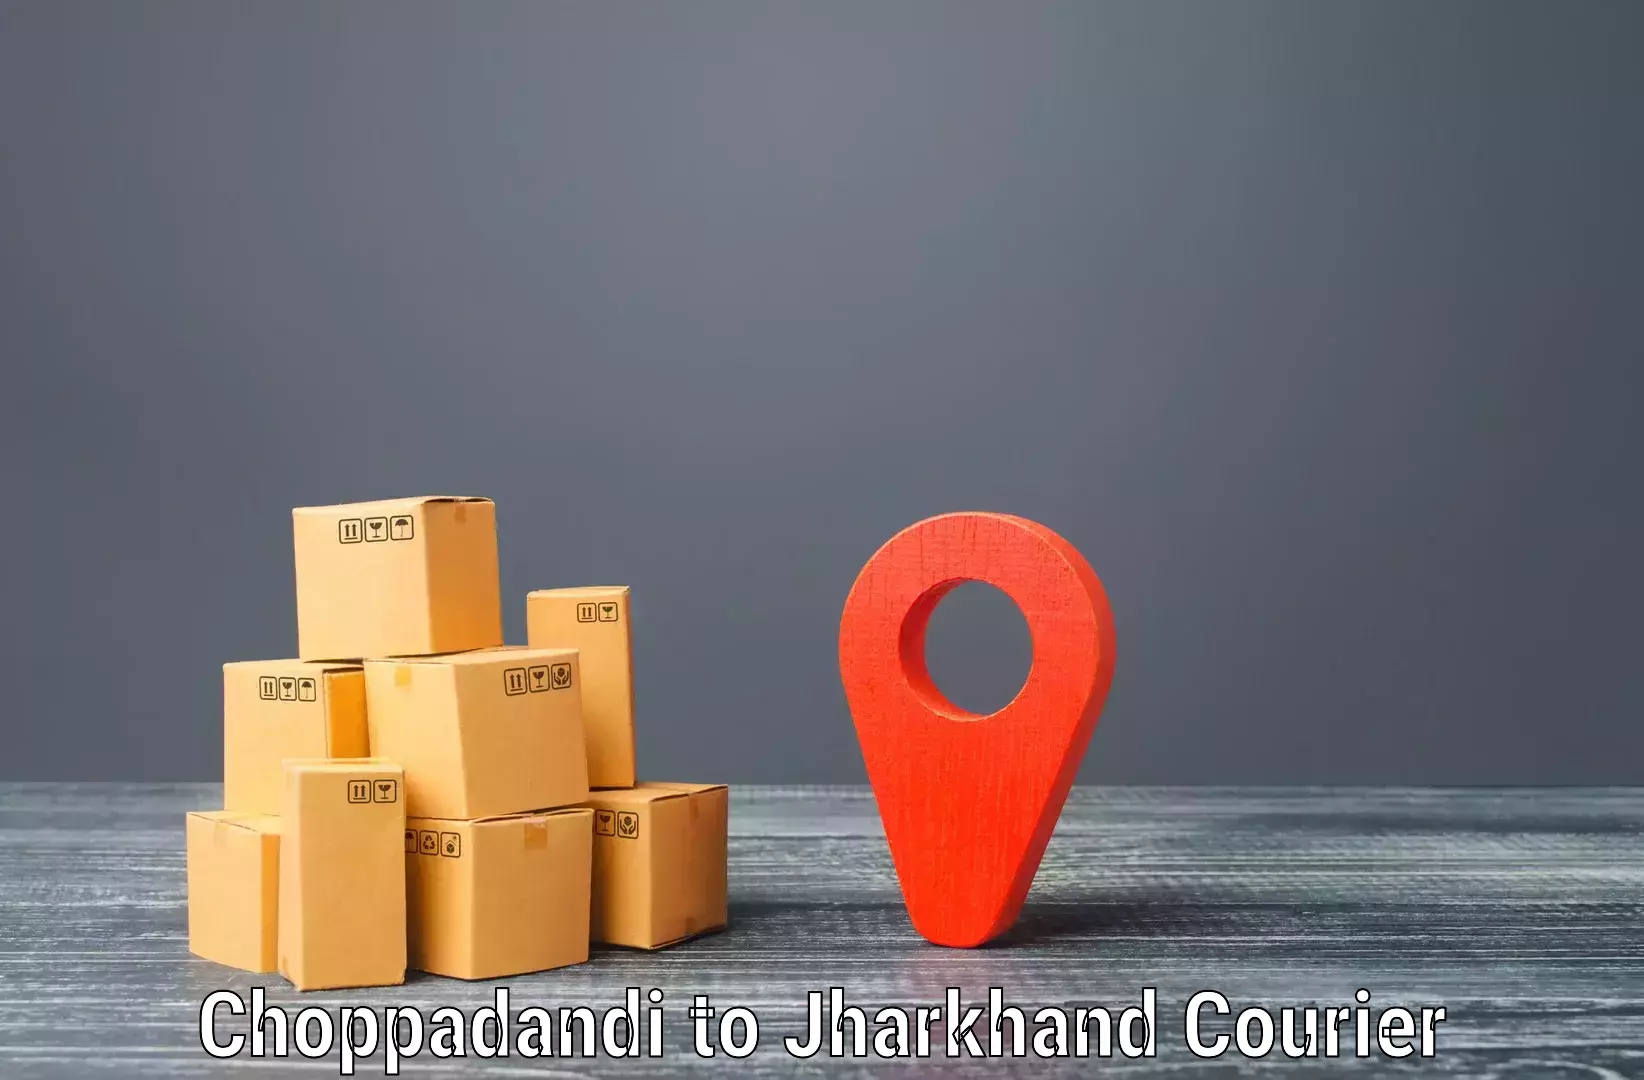 Express logistics providers Choppadandi to Birla Institute of Technology Ranchi